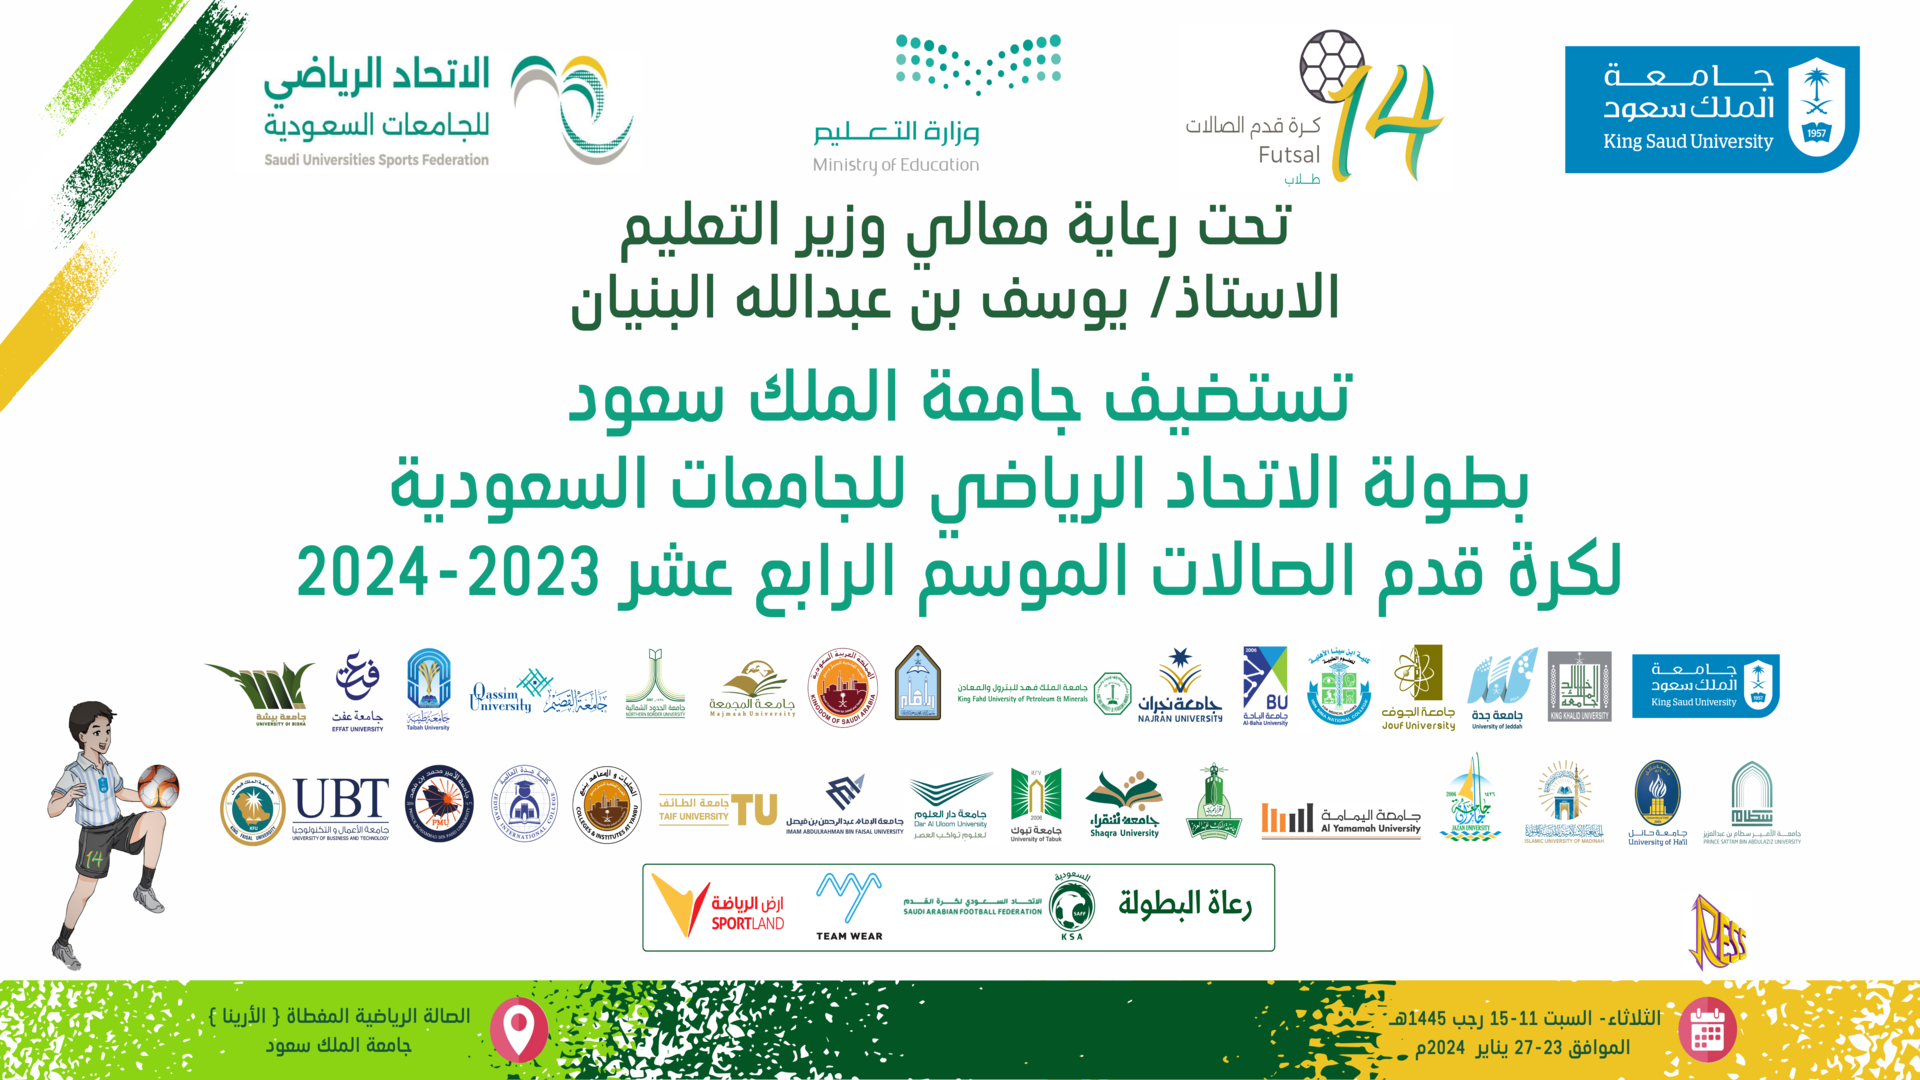 بطولة الاتحاد الرياضي للجامعات السعودية لكرة قدم الصالات للطلاب